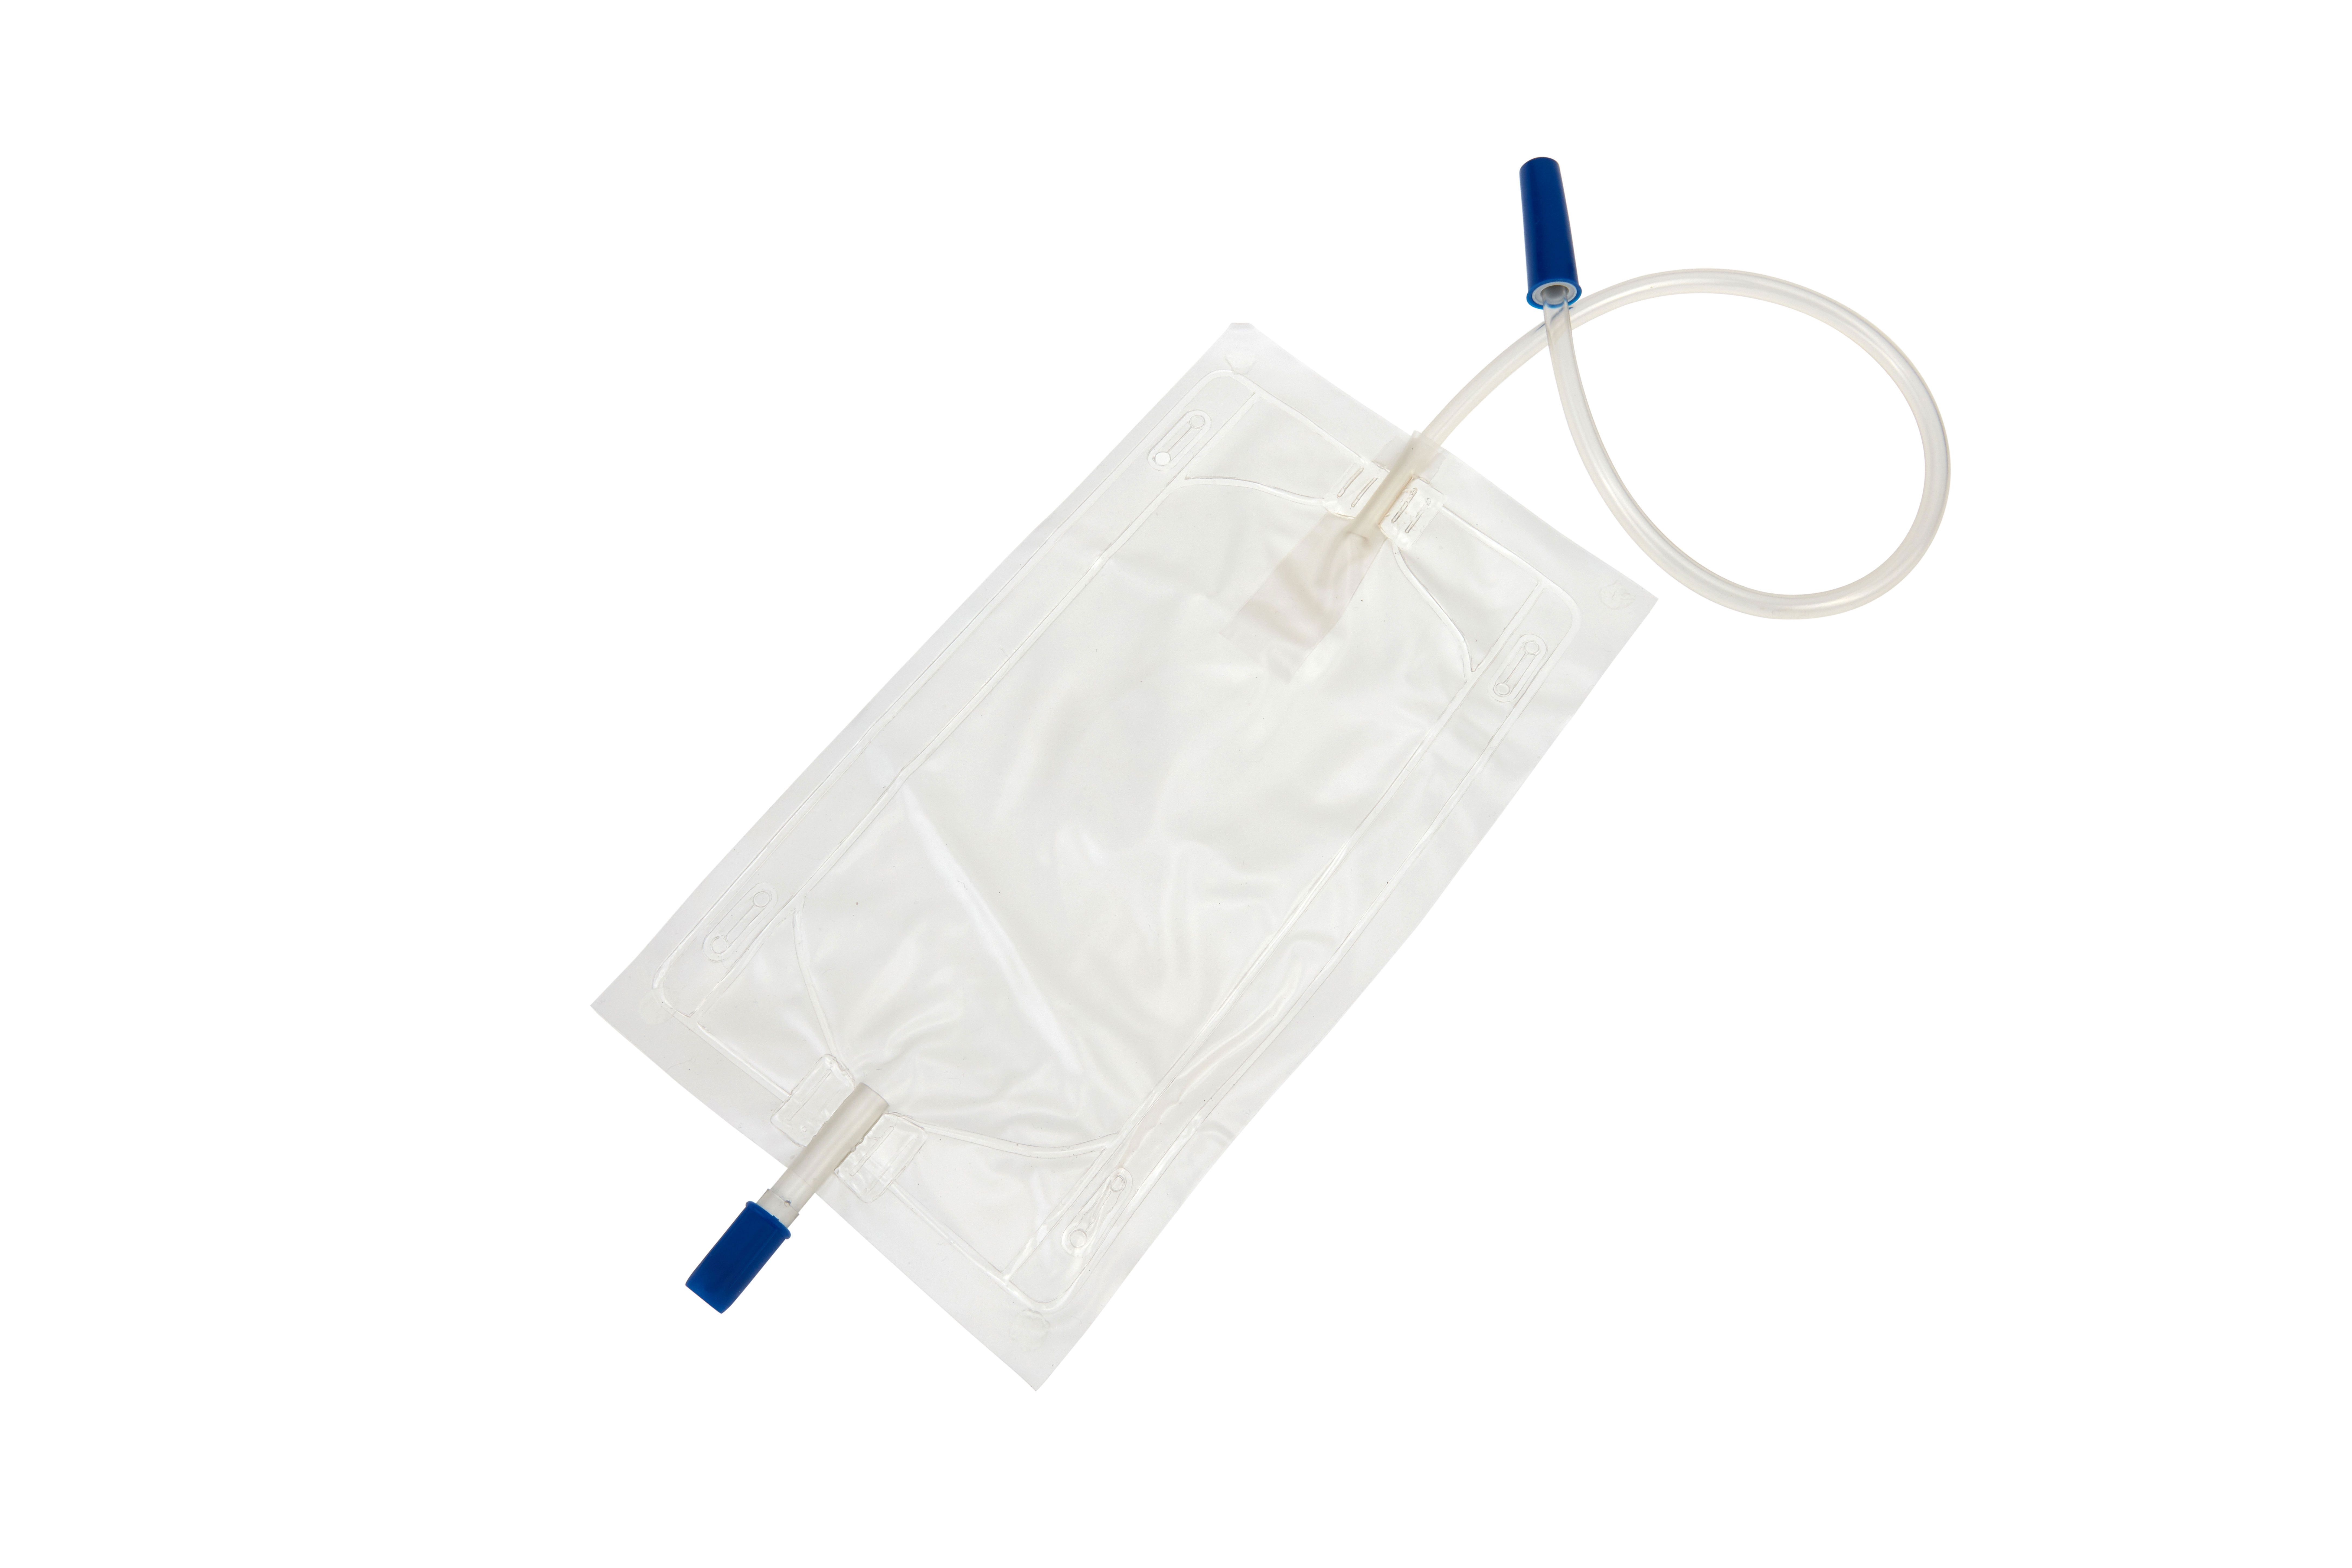 LB500MLNRV Poches à urine Romed avec fixation à la jambe, 500 ml, avec clapet antiretour et dispositif de vidange par le bas, tube de 45 cm, stériles, conditionnées individuellement dans un sac plastique, 250 unités par carton.